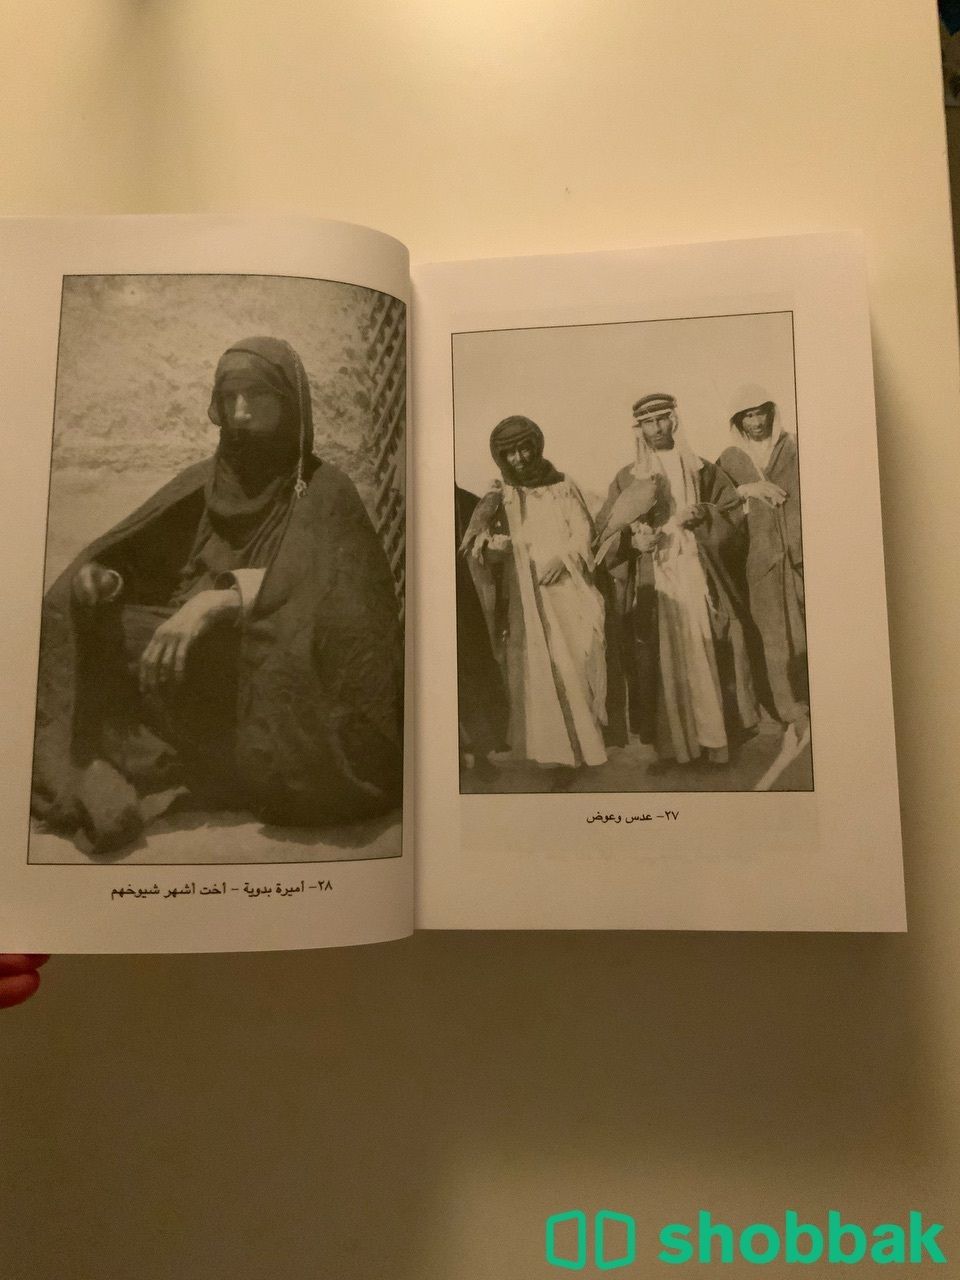 كتاب (عرب الصحراء) مترجم Shobbak Saudi Arabia